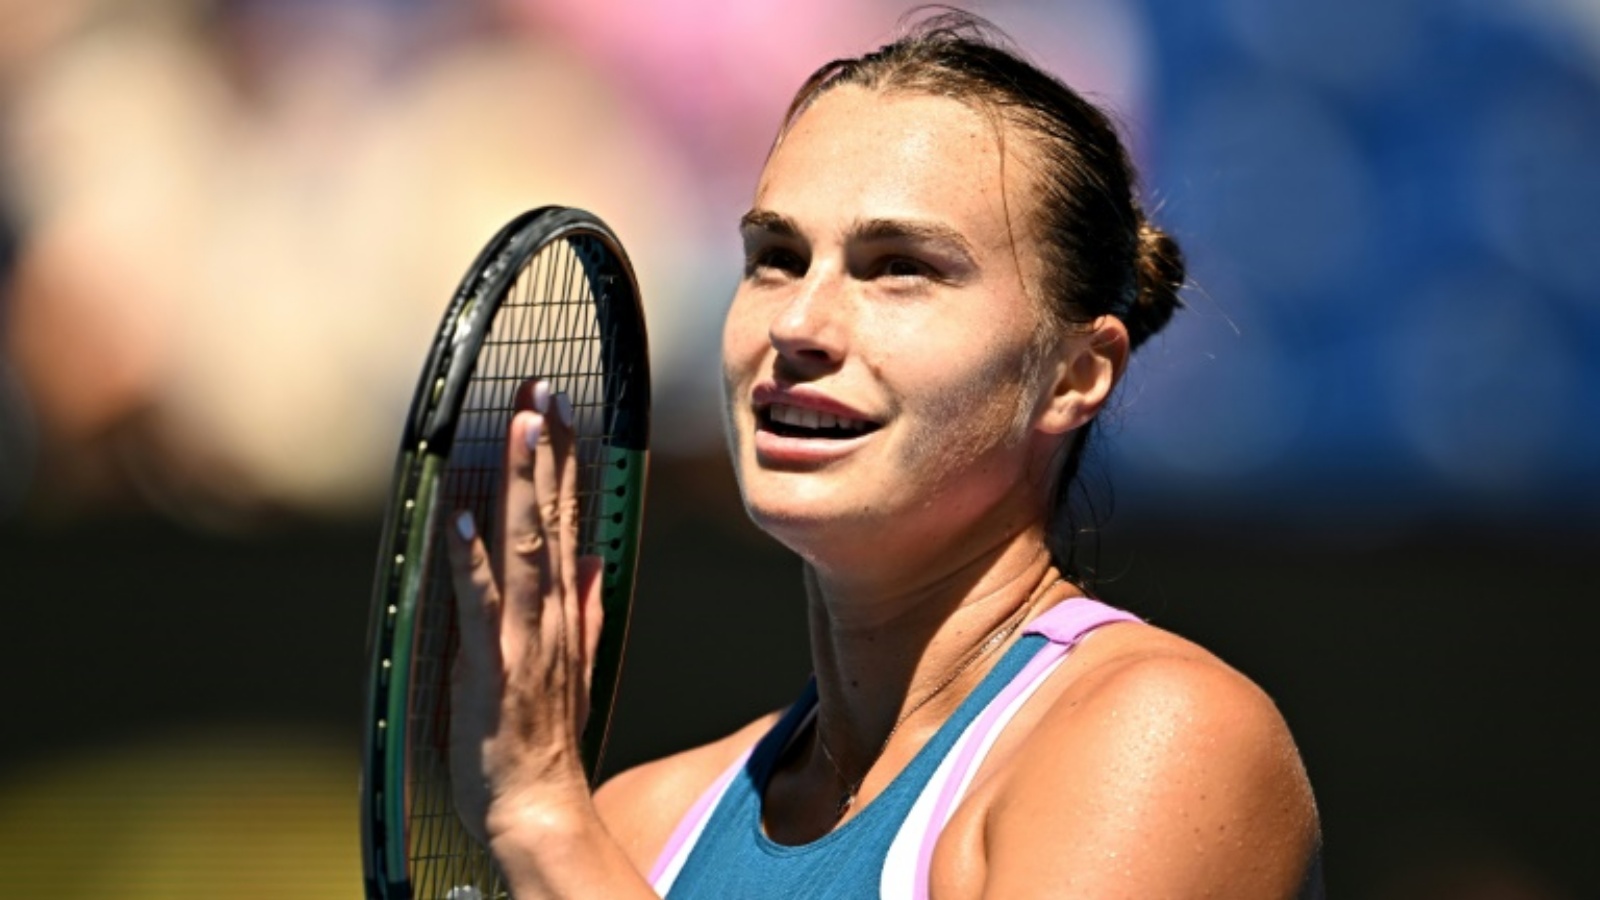 البيلاروسية أرينا سابالينكا بعد فوزها على الكرواتية دونا فيكيتش في ربع نهائي بطولة استراليا المفتوحة في كرة المضرب. ملبورن في 25 يناير 2023